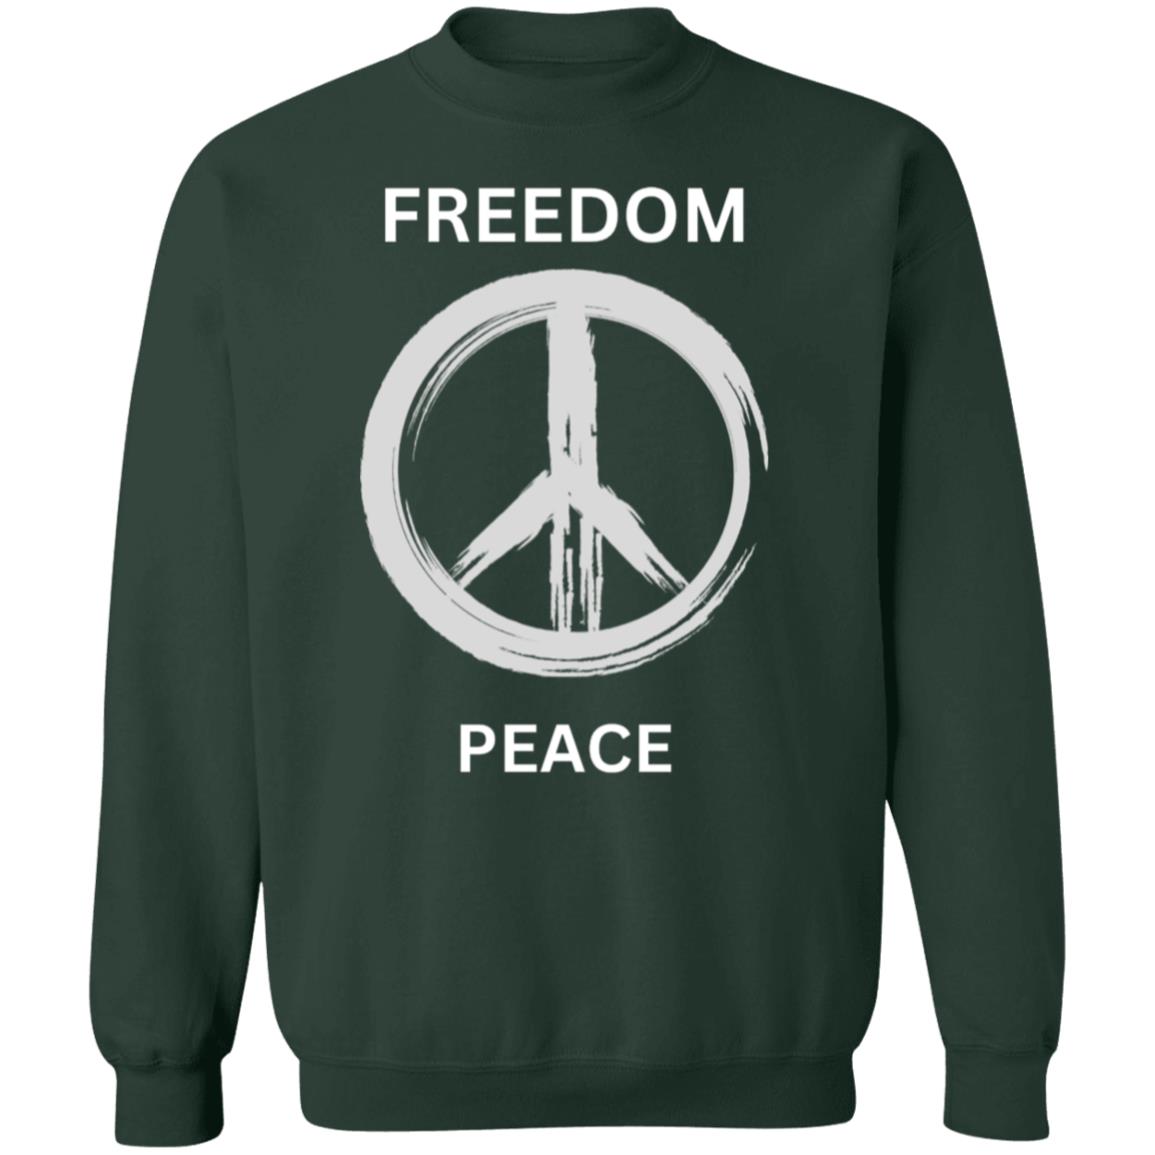 Freedom & Peace